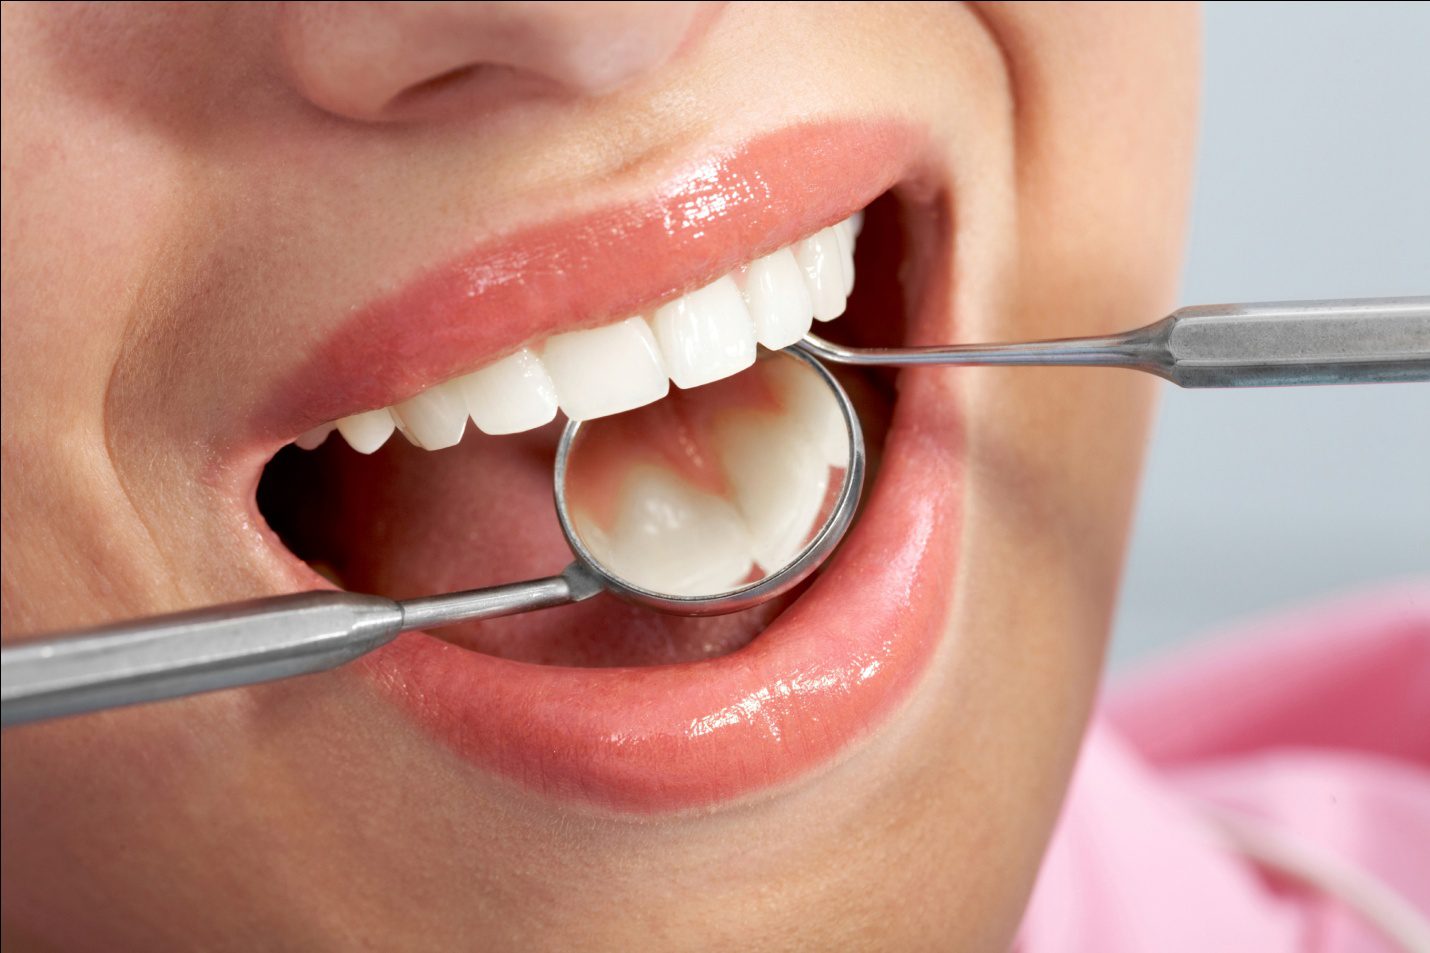 Sau khi lấy cao răng bao lâu thì được ăn? Lưu ý gì sau khi lấy cao răng 1